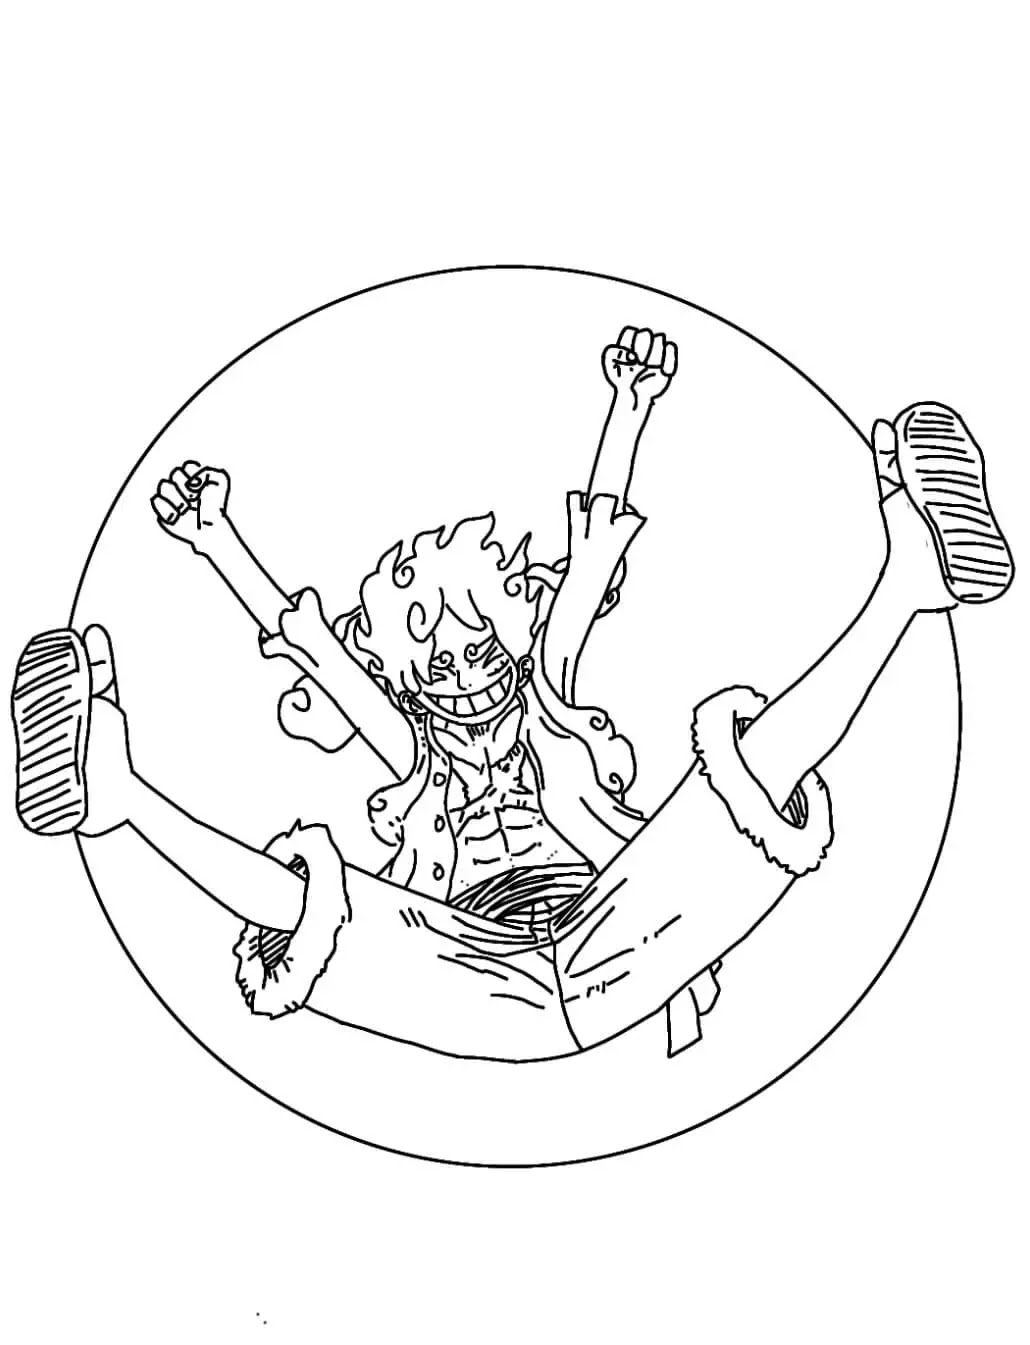 Gear 5 của Luffy thực sự mạnh hơn nhiều so với những gì nó thể hiện trong  manga  BlogAnChoi